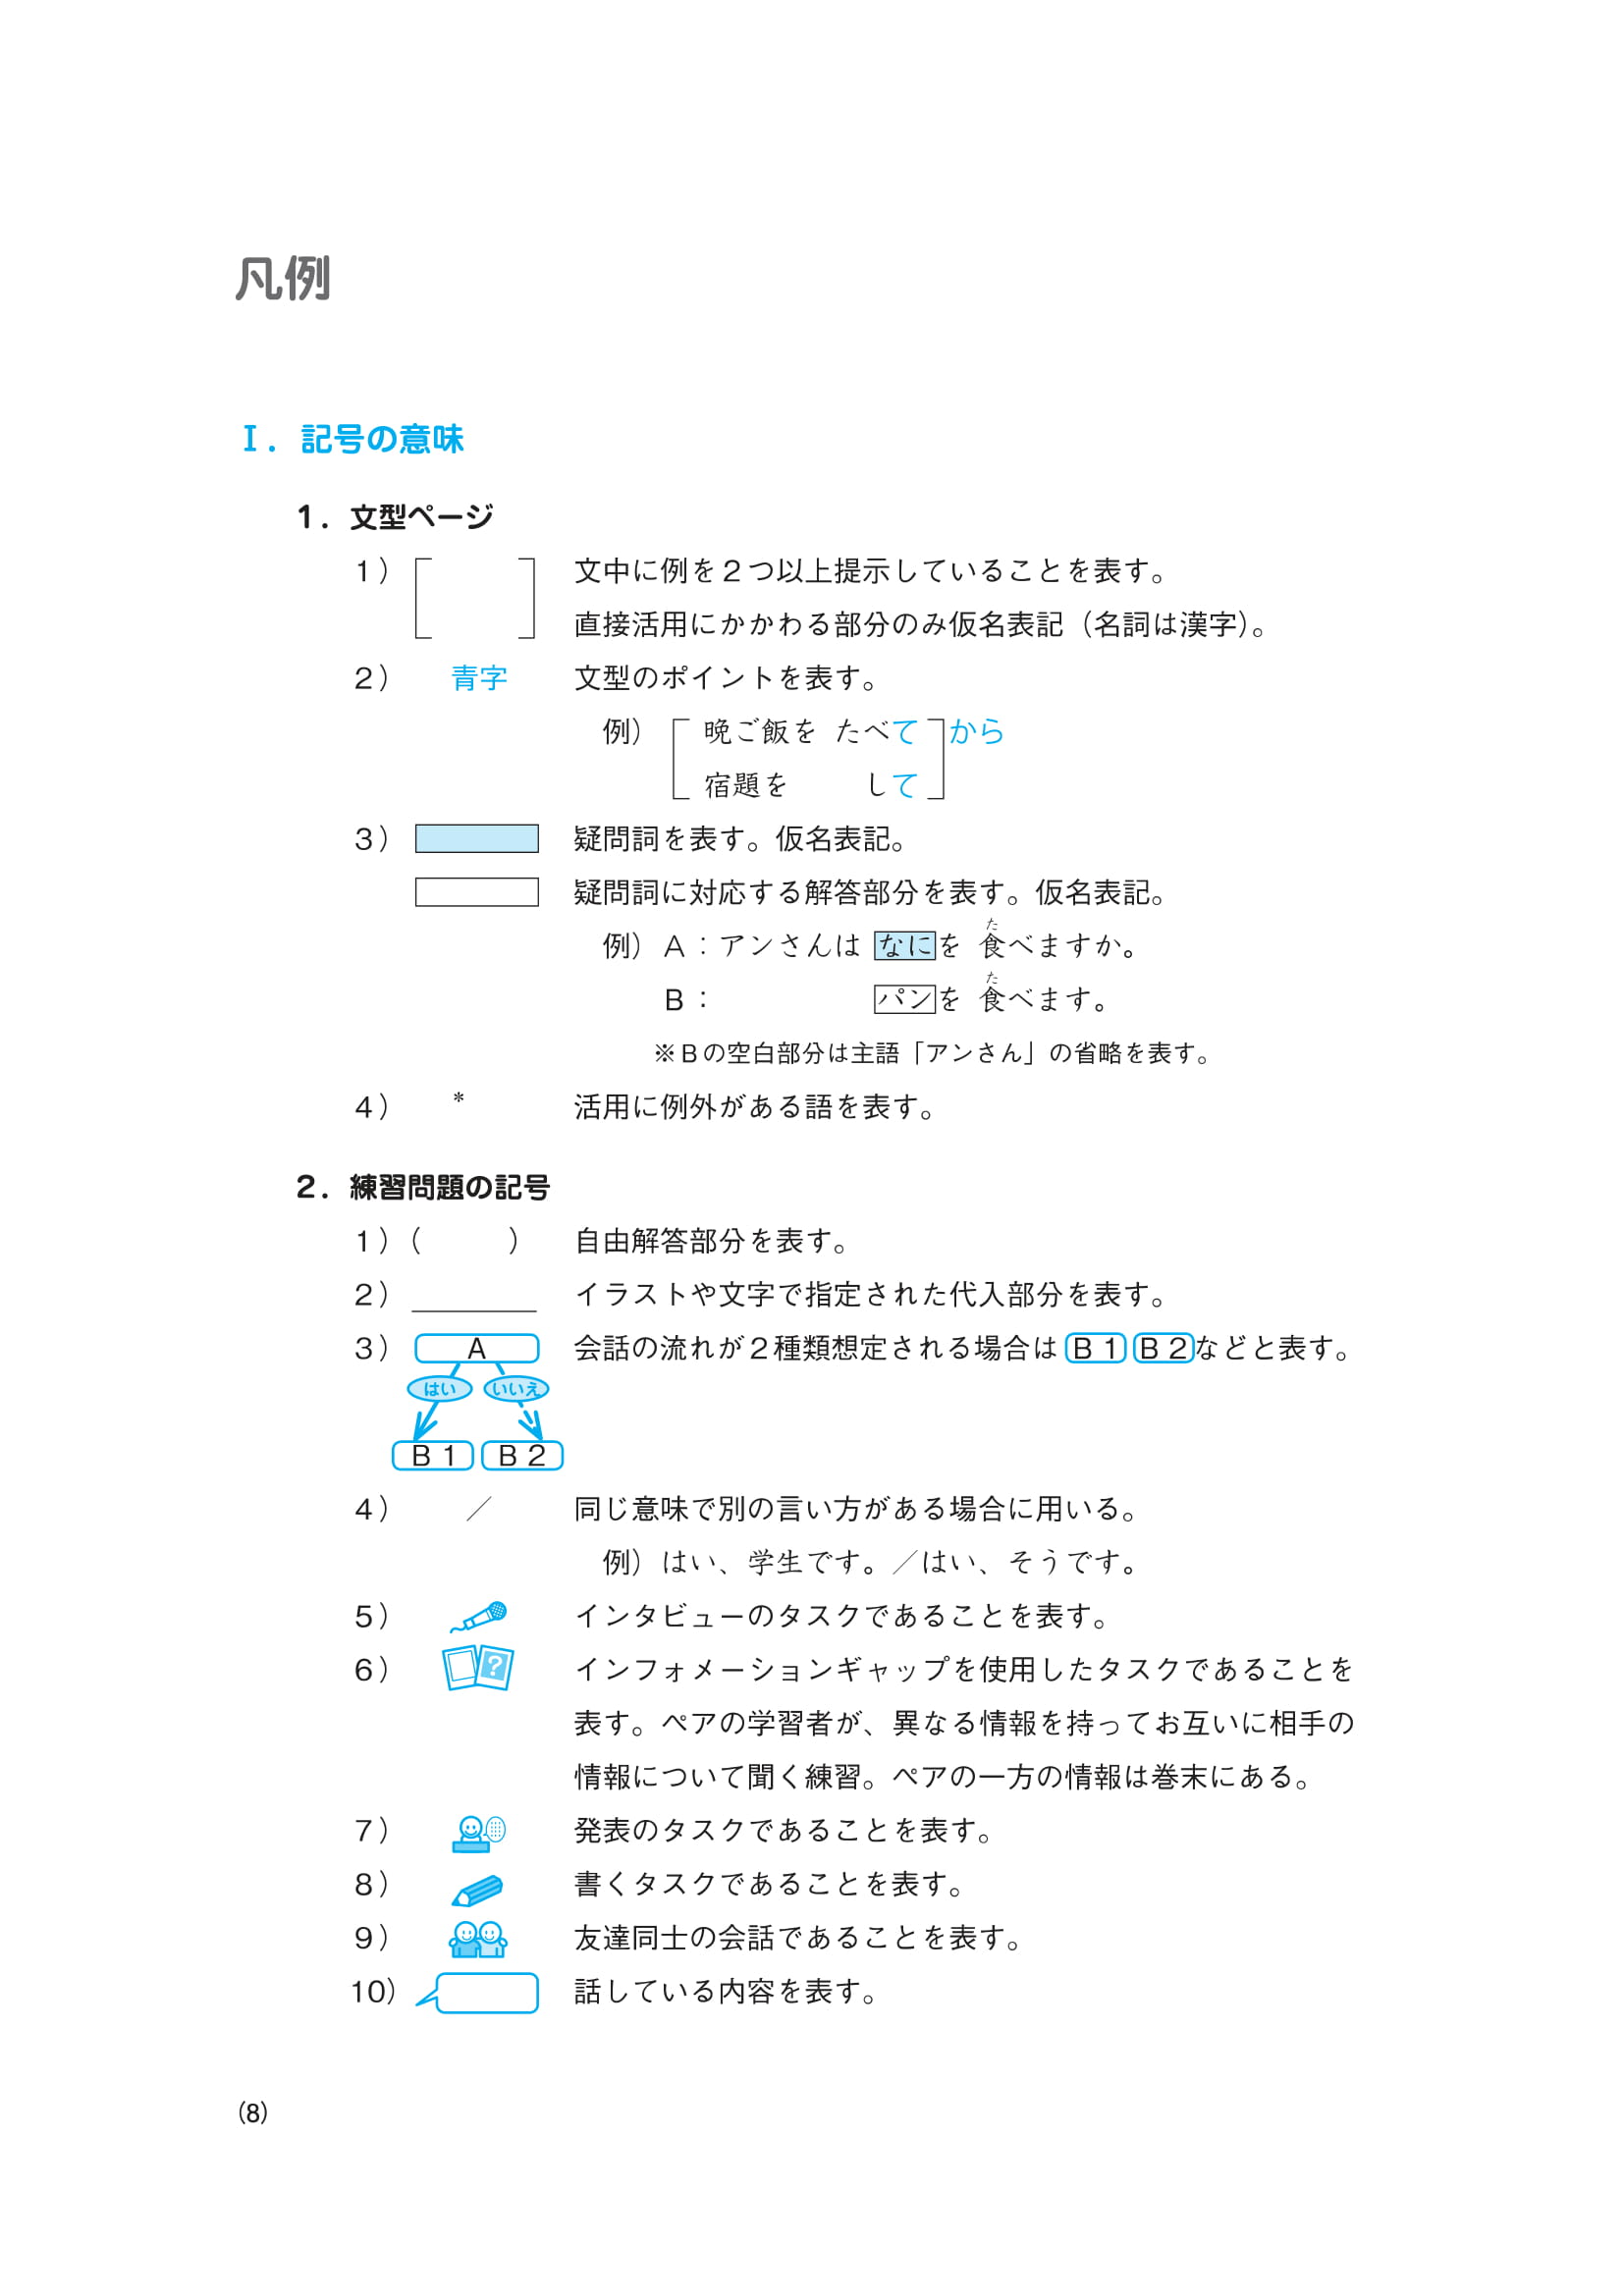 Giáo Trình Tiếng Nhật Daichi Sơ Cấp 1 PDF